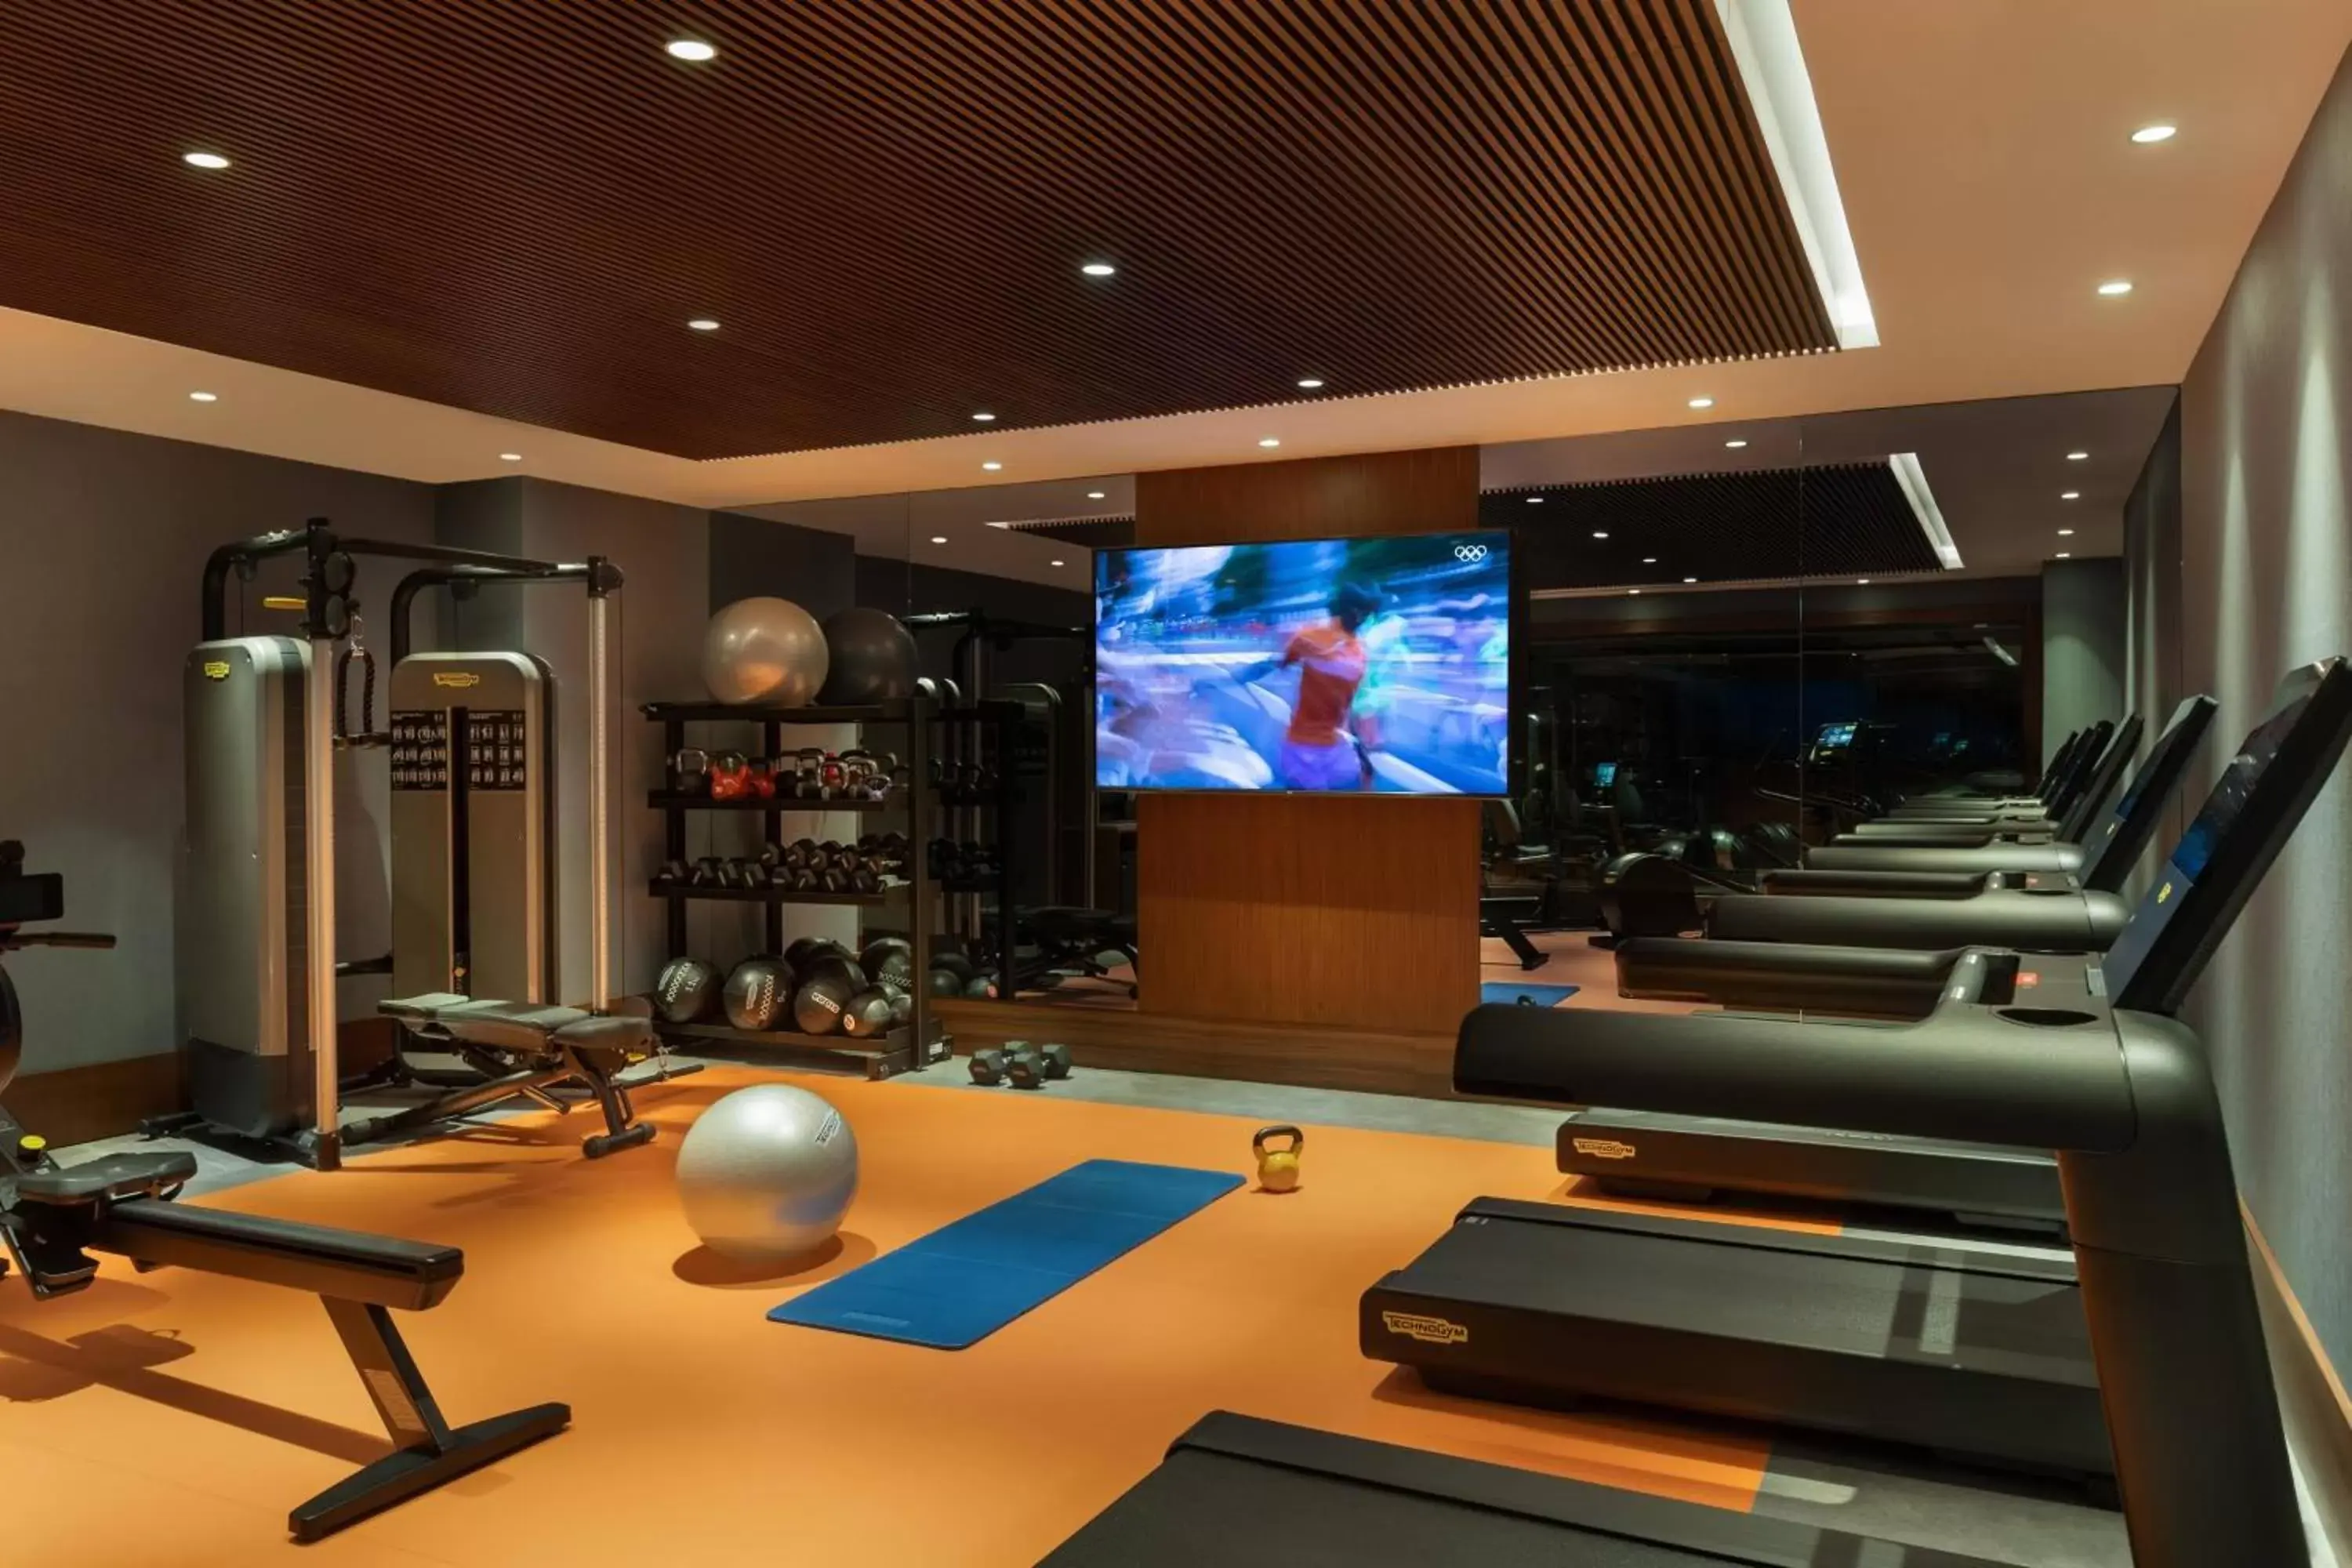 Fitness centre/facilities, Fitness Center/Facilities in Izmir Marriott Hotel